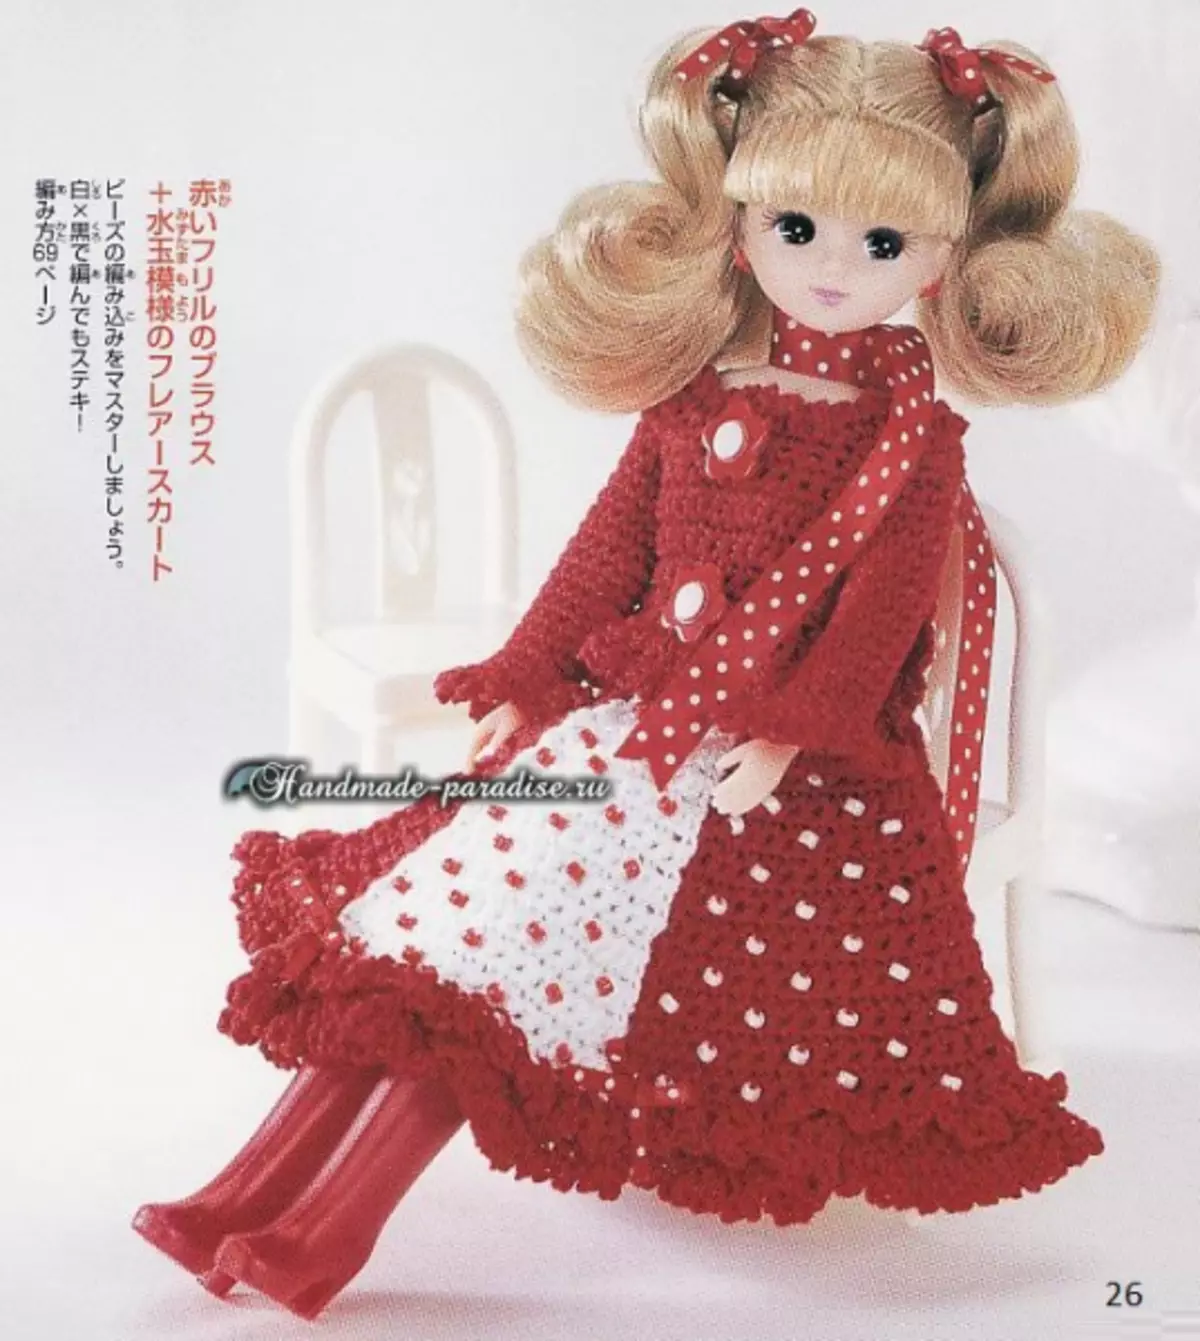 人形のための服を編む。スキーム付きマガジン